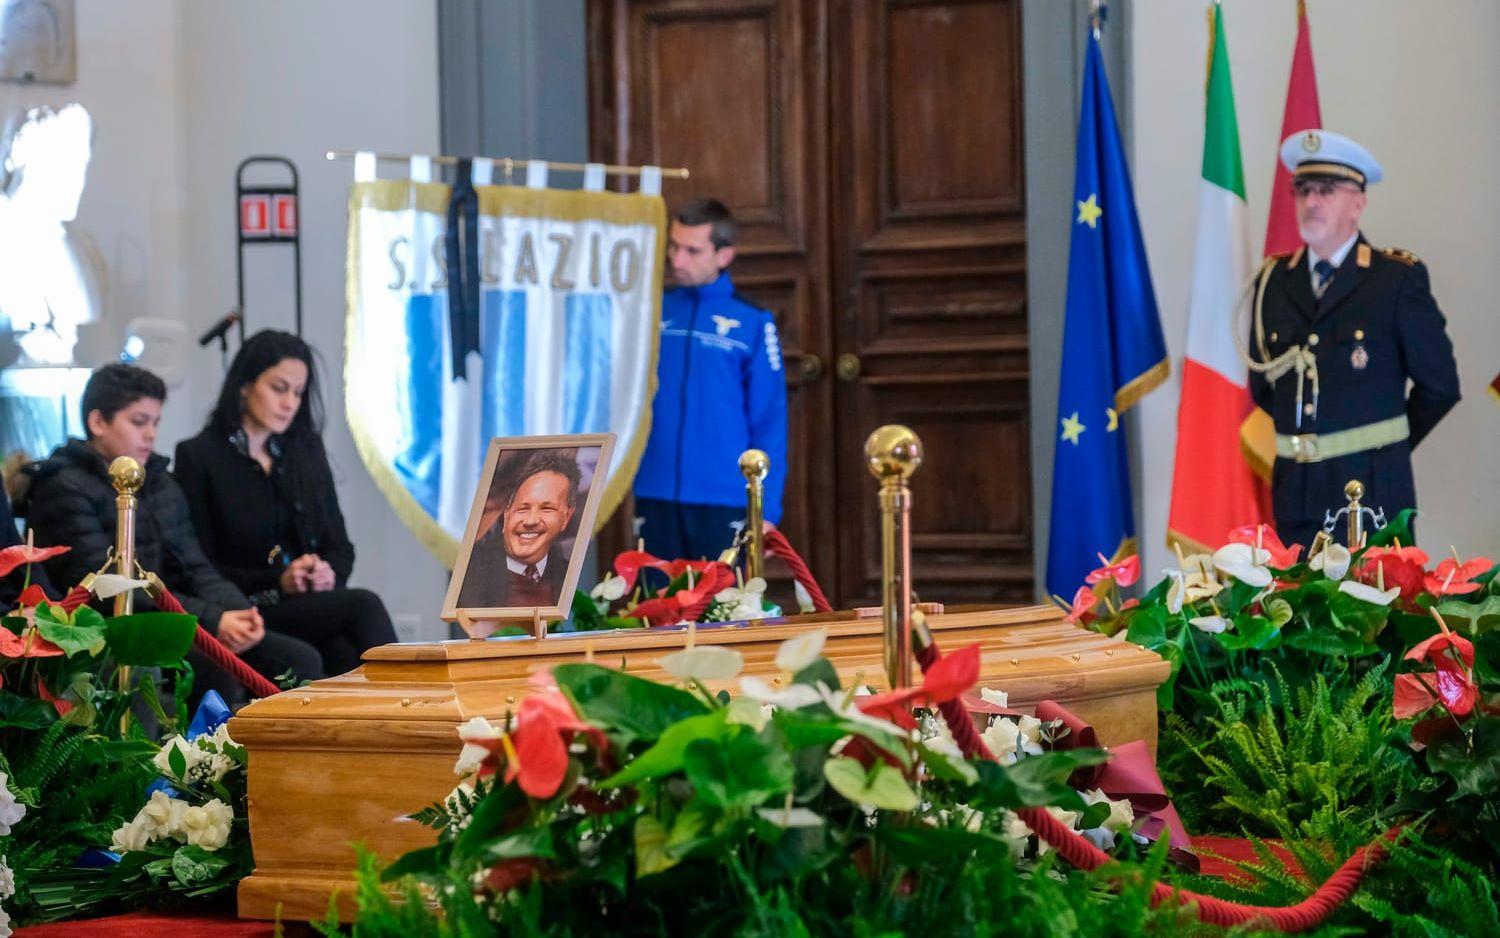 Sinisa Mihajlovic begravdes i Rom under måndagen. Roberto Mancini, Attilio Lombardo och Dejan Stankovic, tidigare lagkamrater till Mihajlovic, var några av de personer som bar ut kistan efter ceremonin